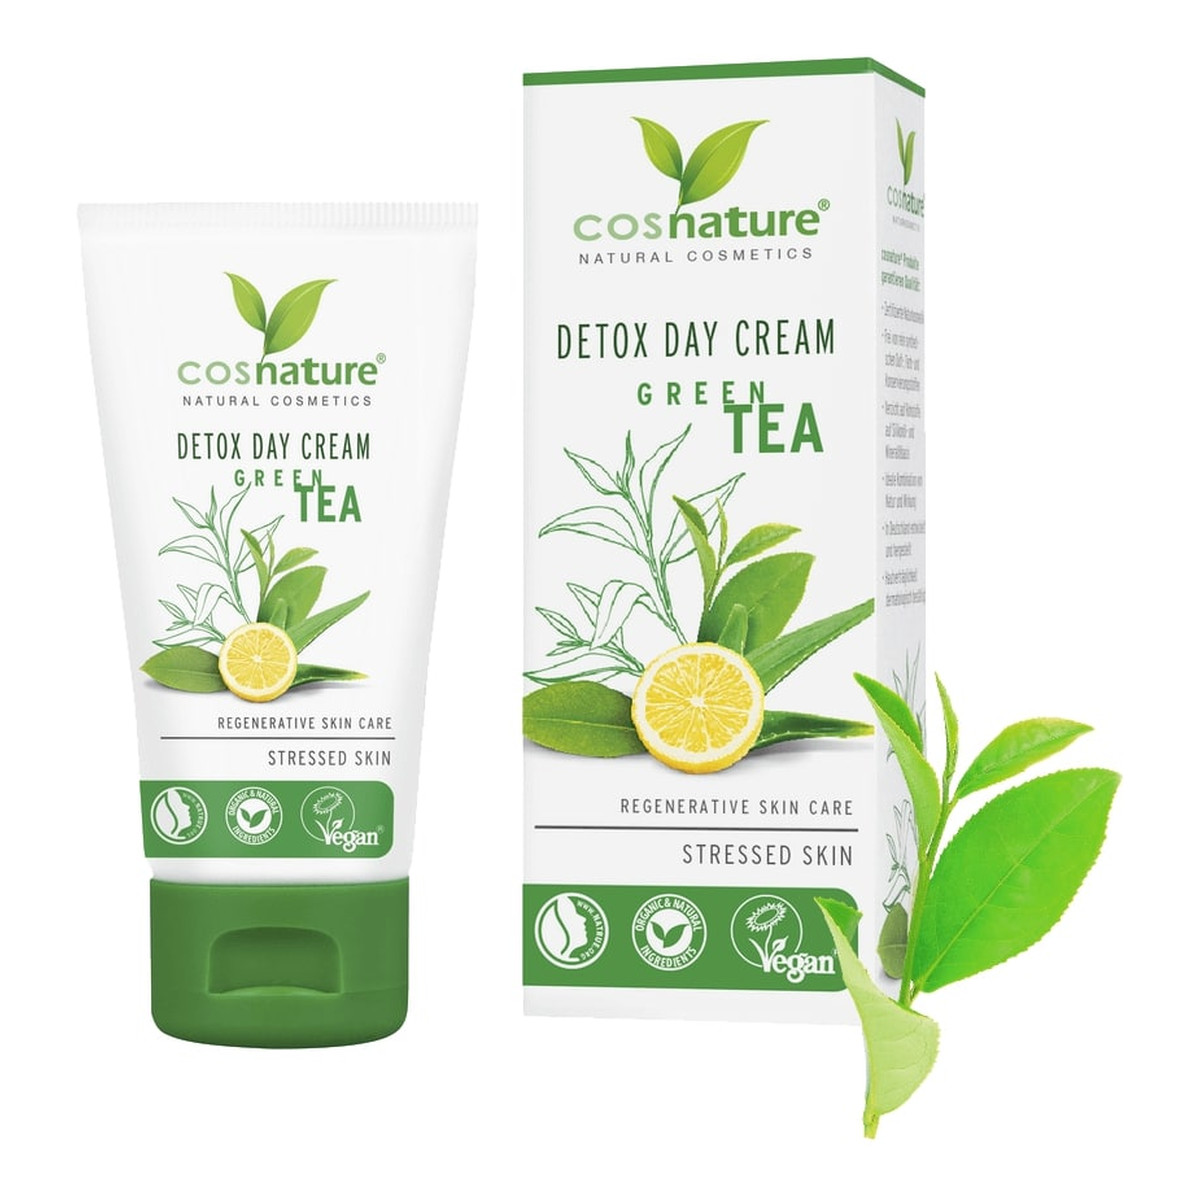 Cosnature Detox Day Cream naturalny Krem do twarzy na dzień z zieloną herbatą 50ml